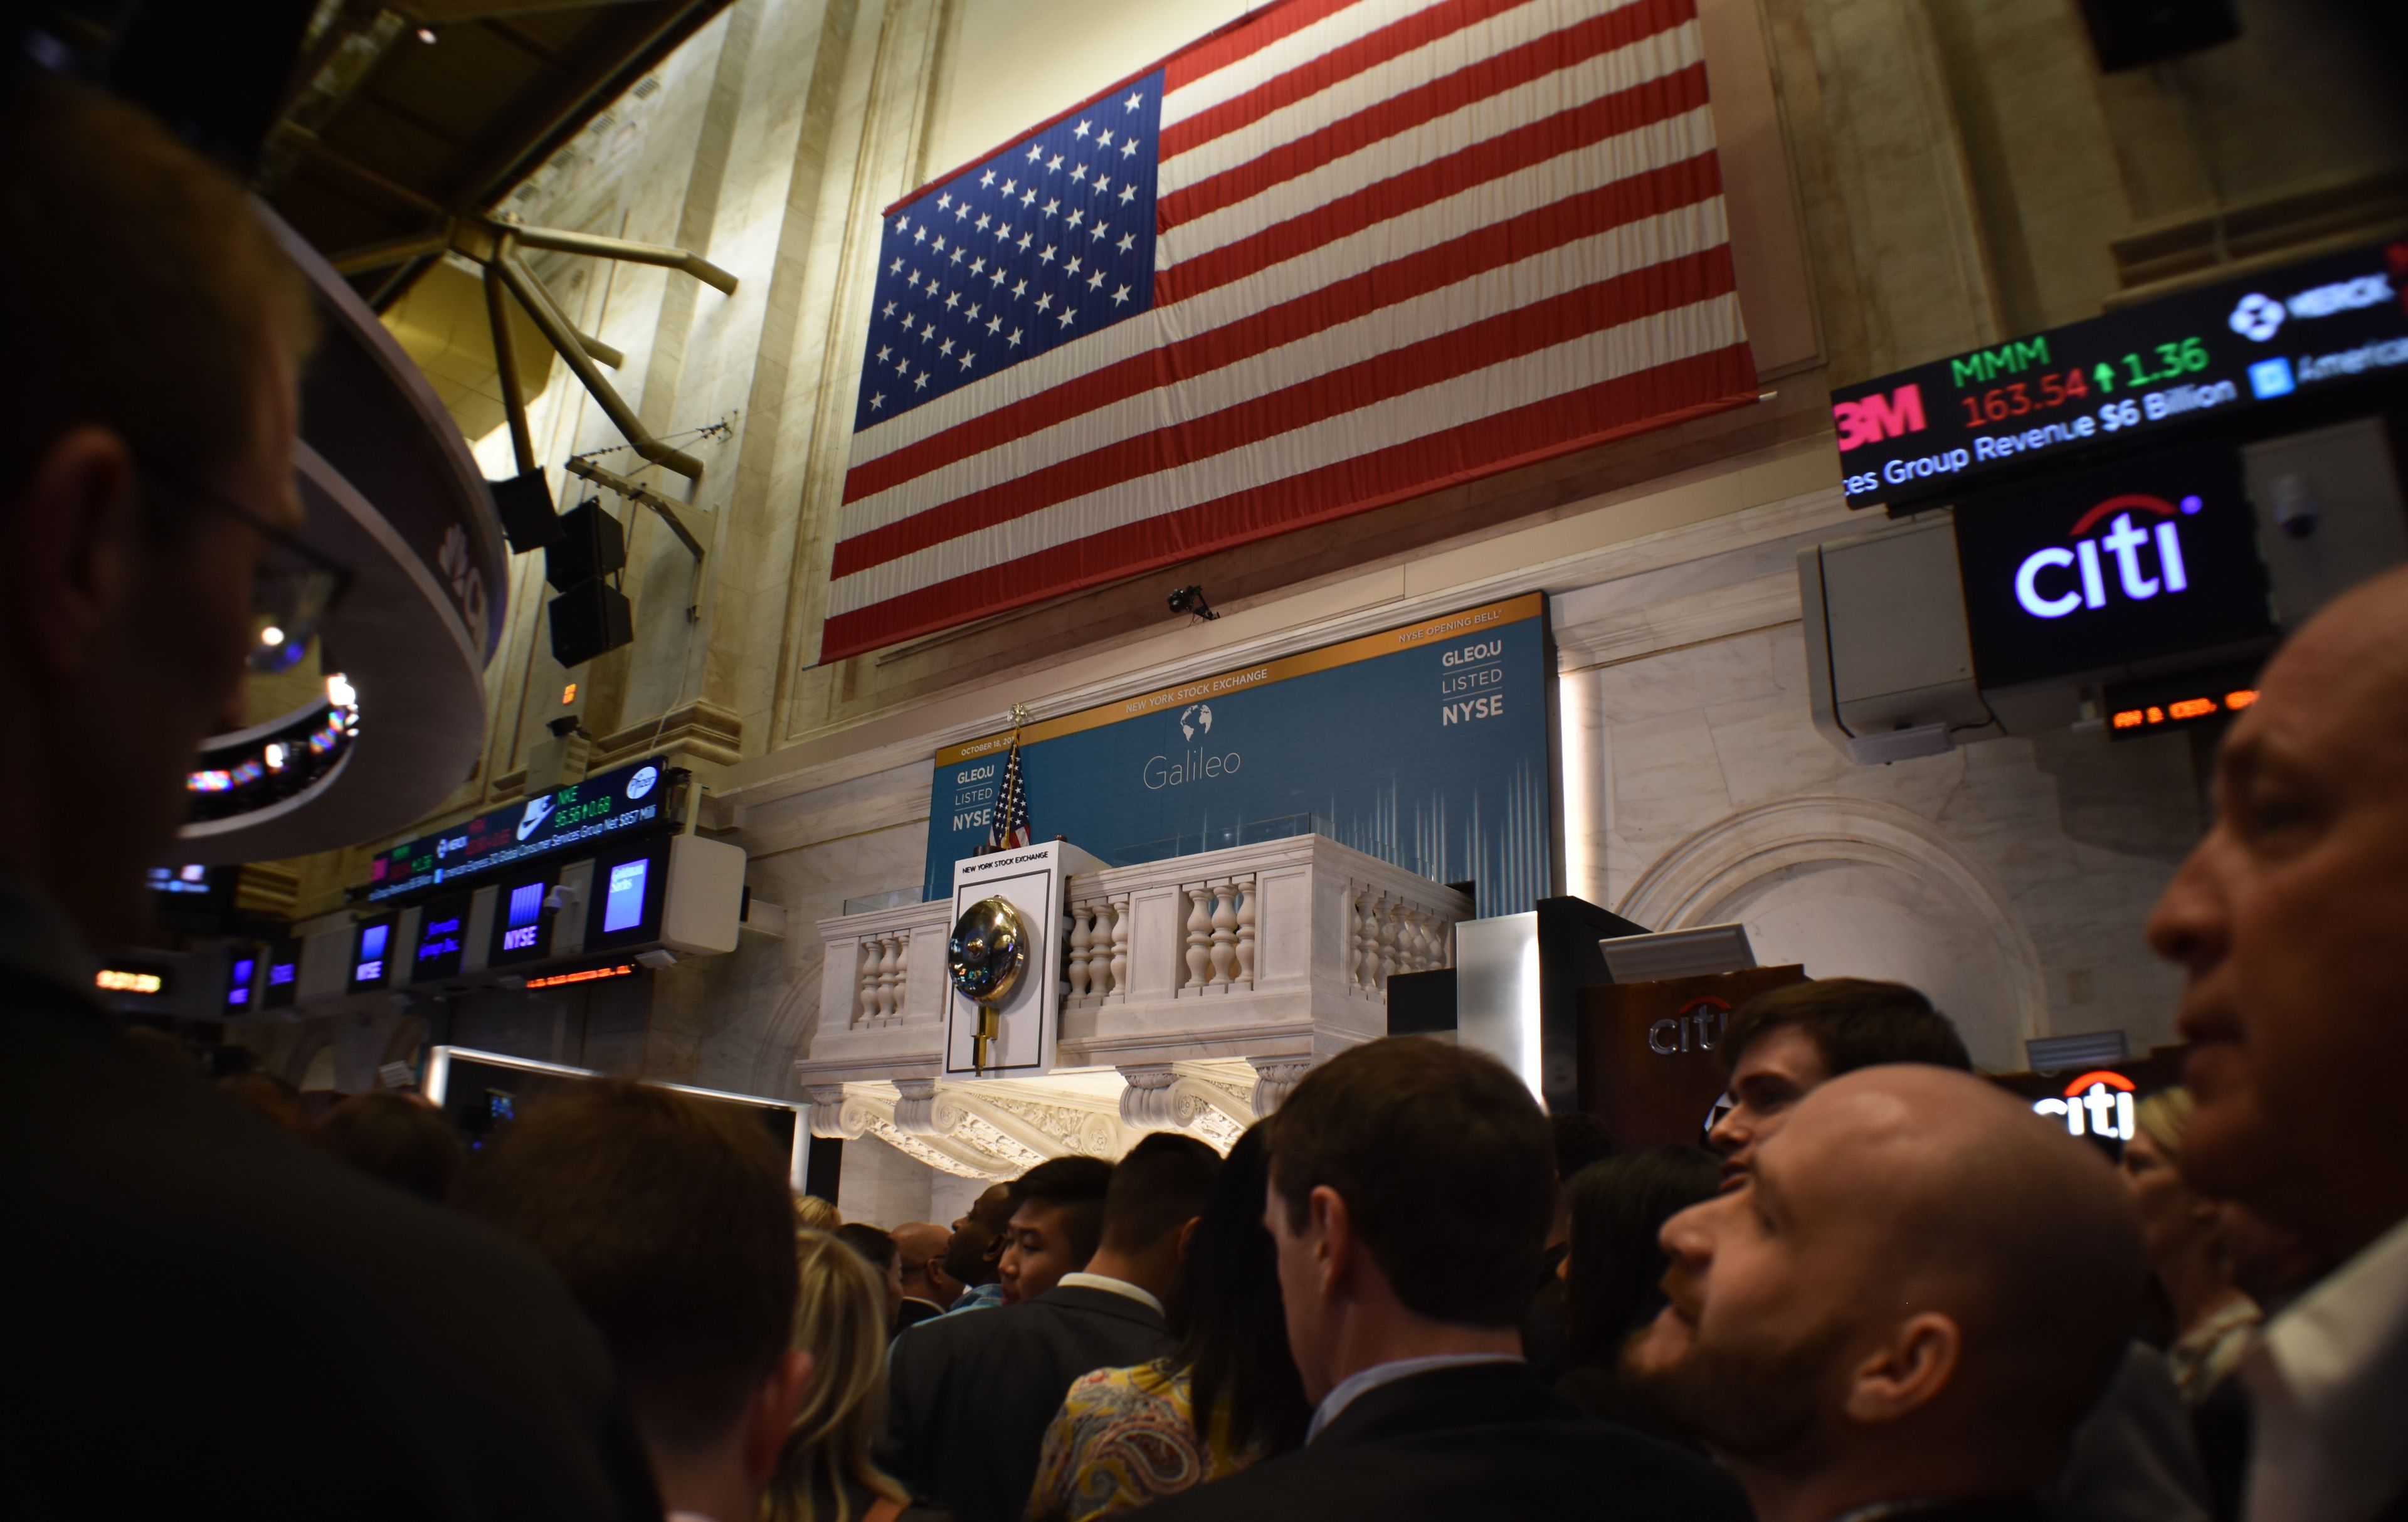 La bandera de Estados Unidos, preside el llamado "podium" en Wall Street.